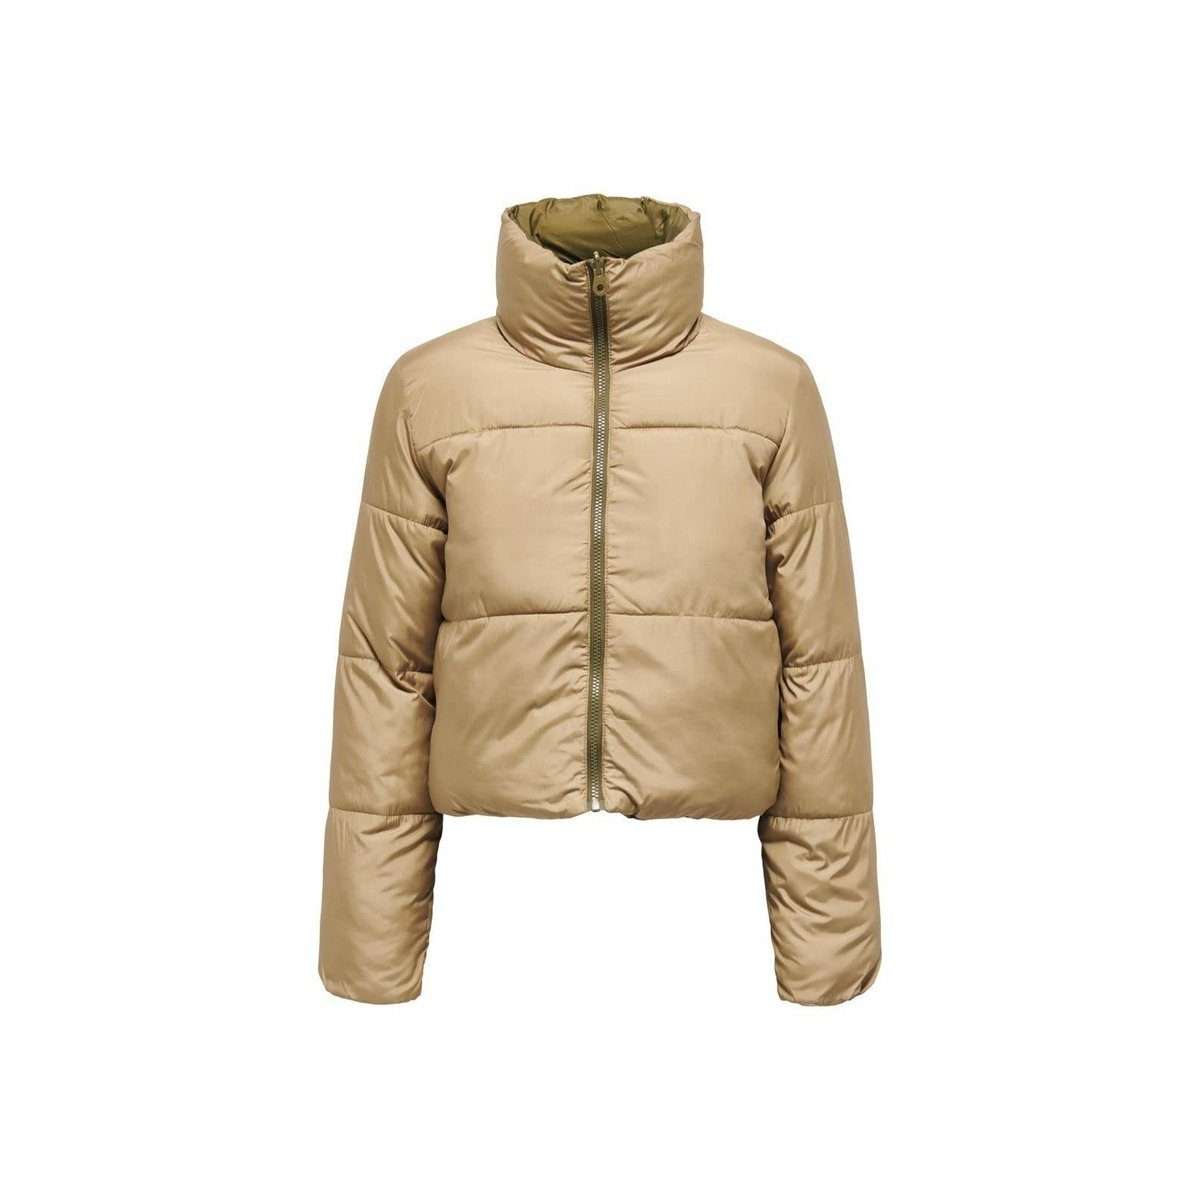 Функциональная куртка 3-в-1 оливкового цвета (1 шт.)